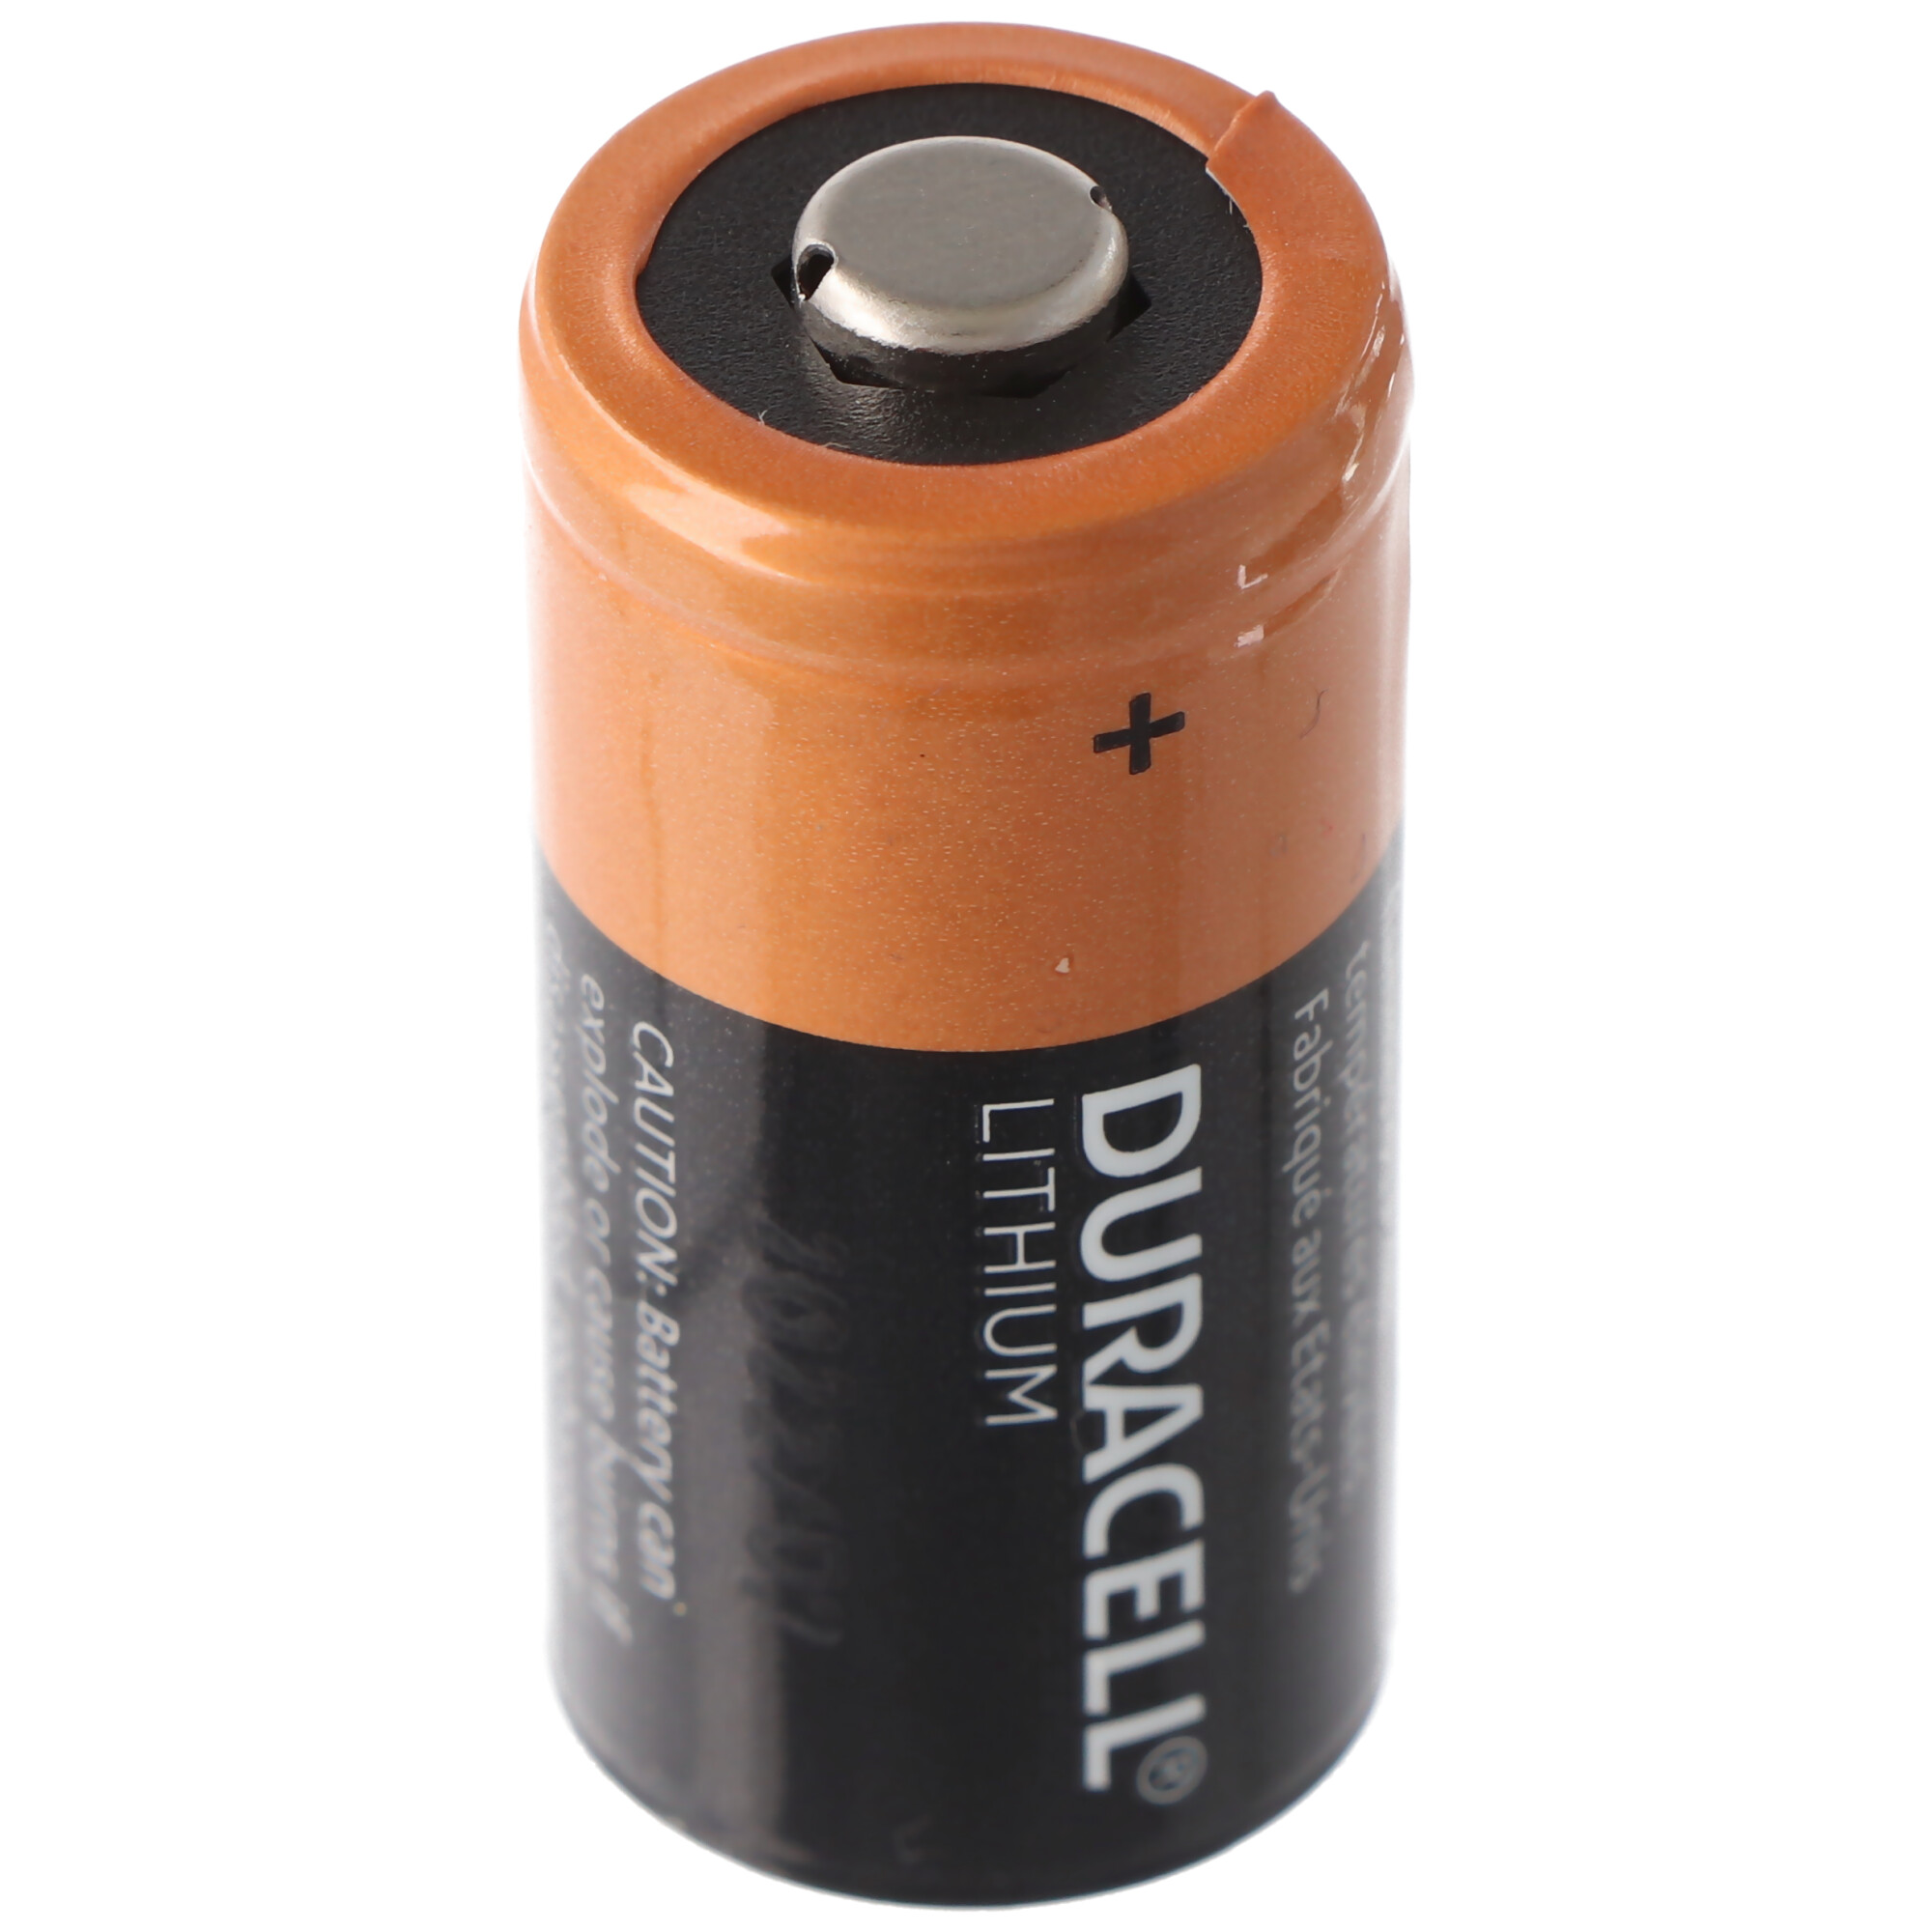 ANSMANN Pile pour appareil-photo lithium CR123A, 3 Volt